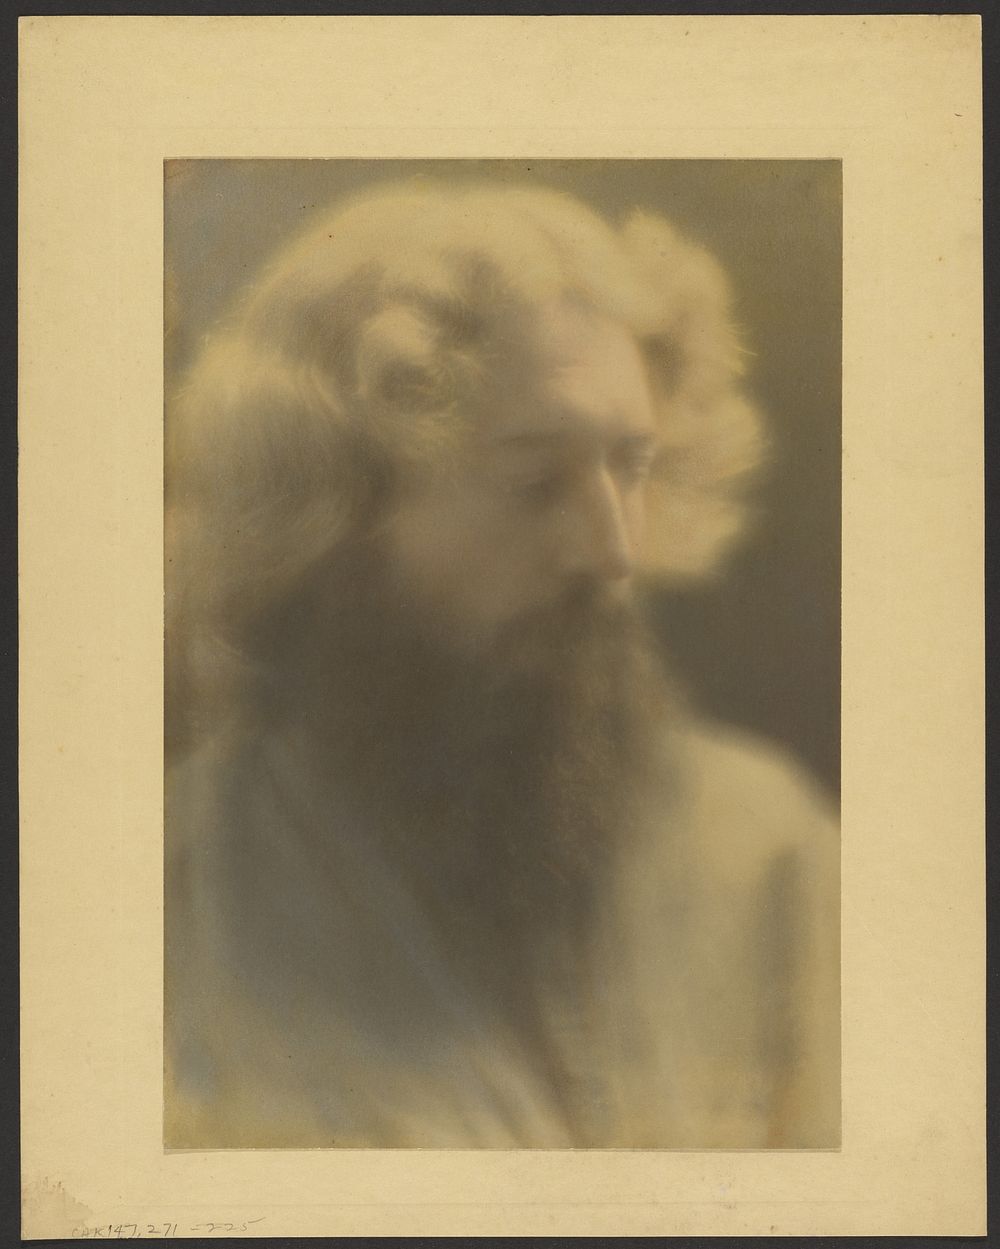 Portrait of a Bearded Man in Glowing Light by Louis Fleckenstein